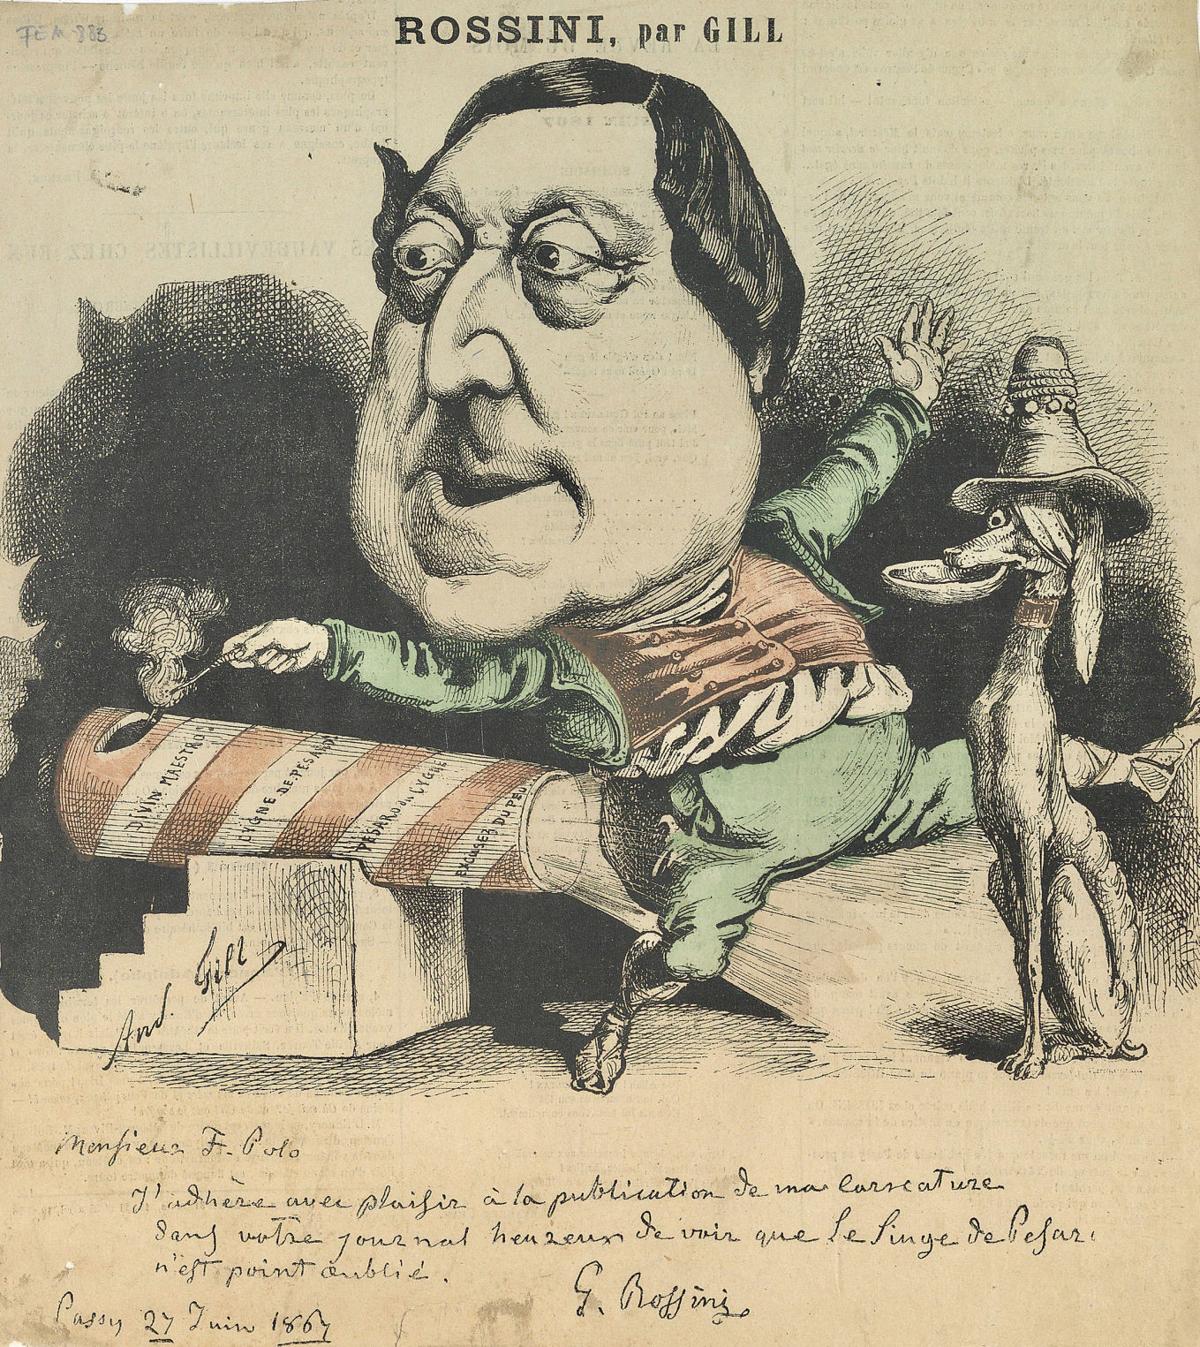 Rossini caricature